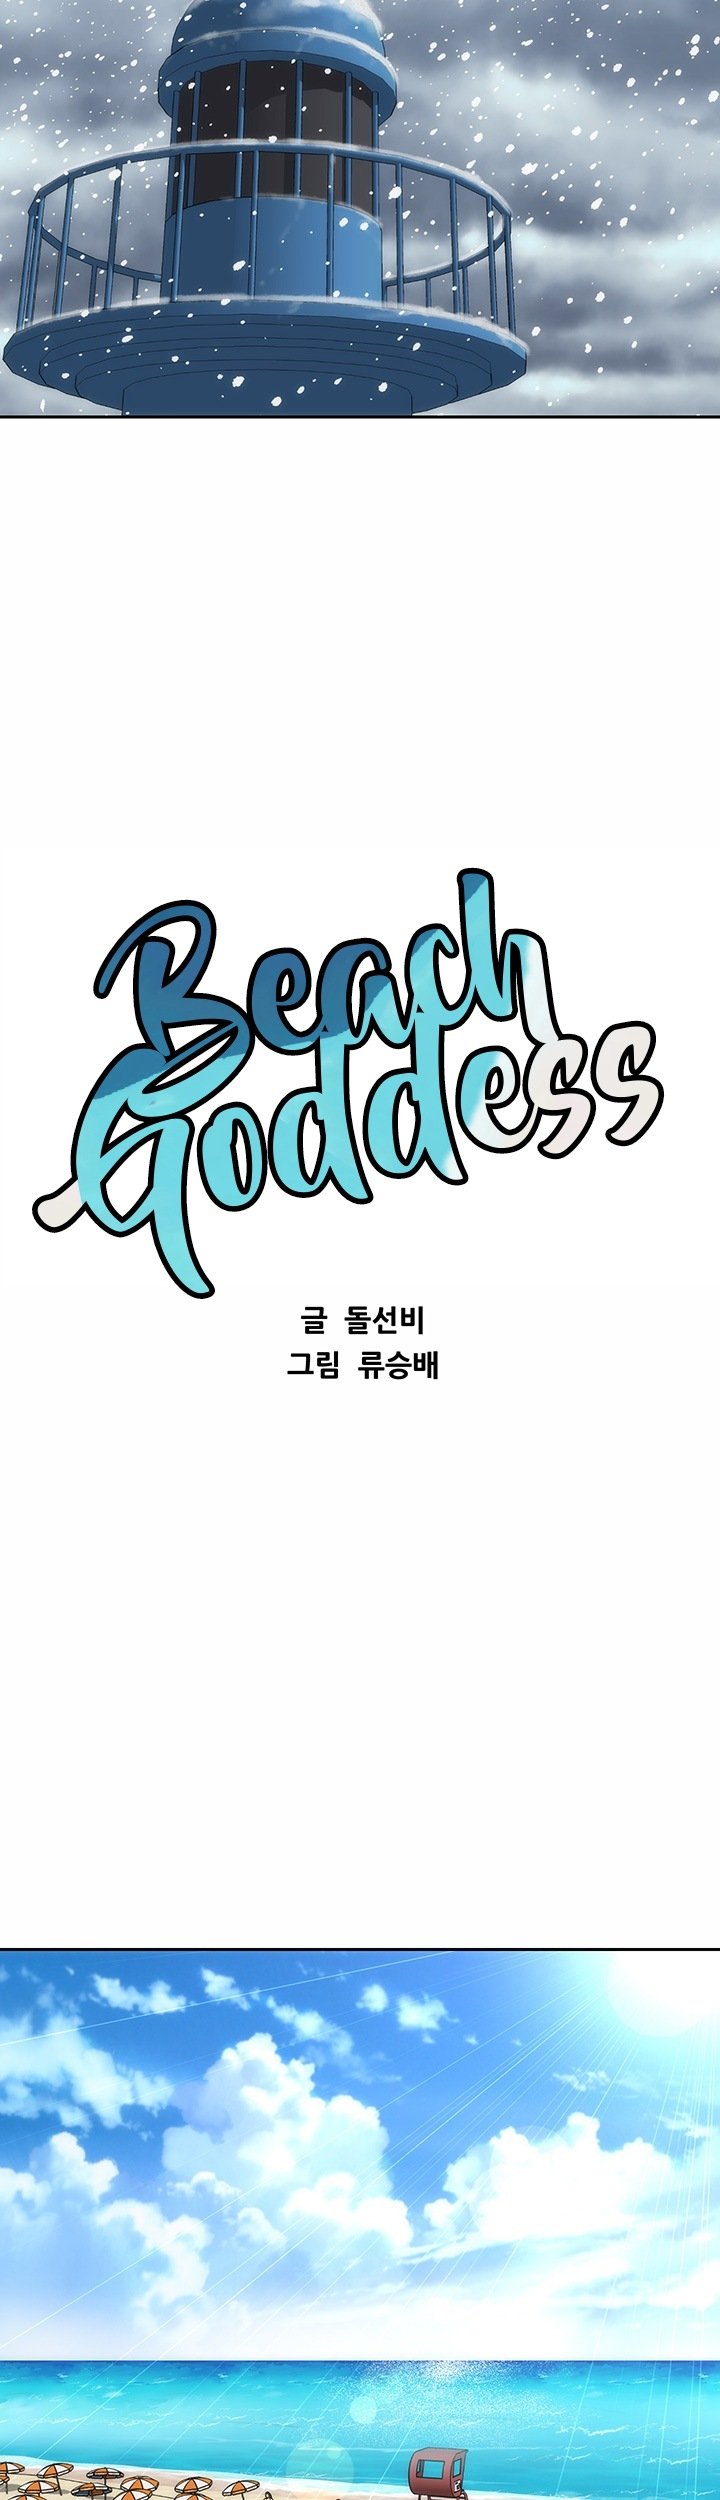 beach-goddess-chap-5-26